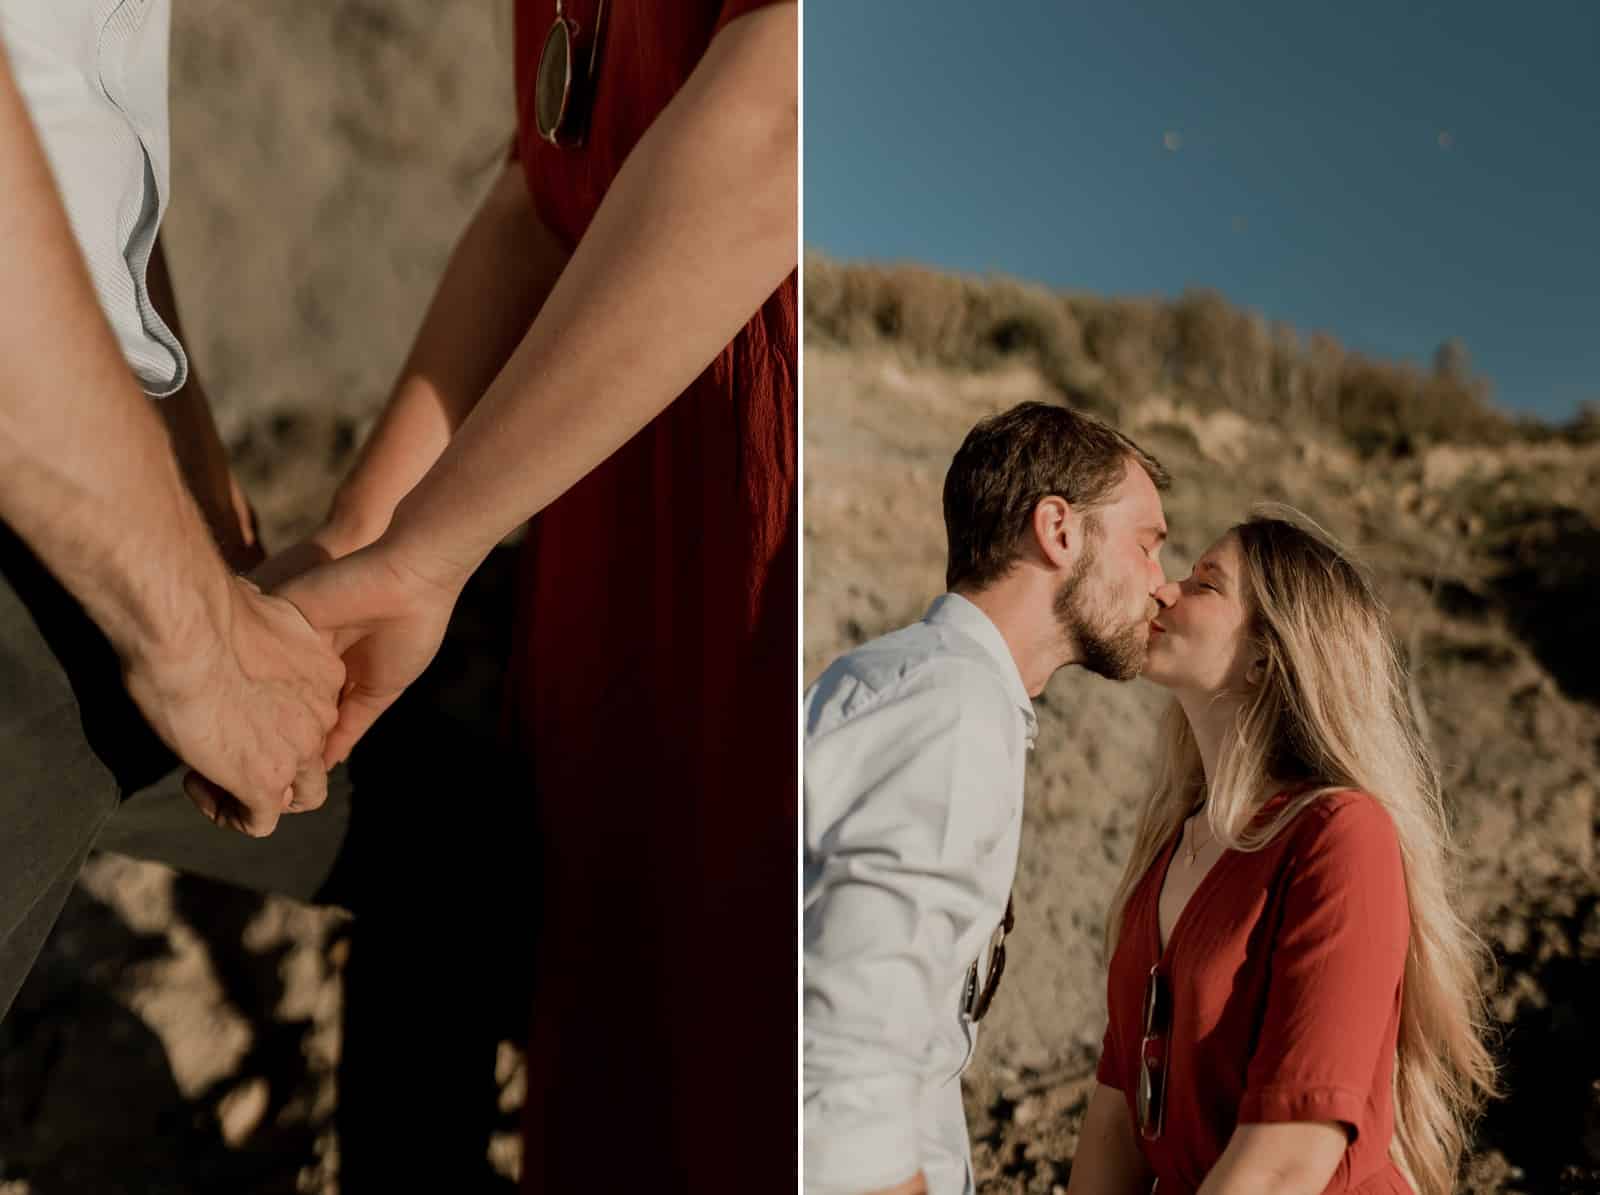 photographe vidéaste couple amoureux plage normandie engagement